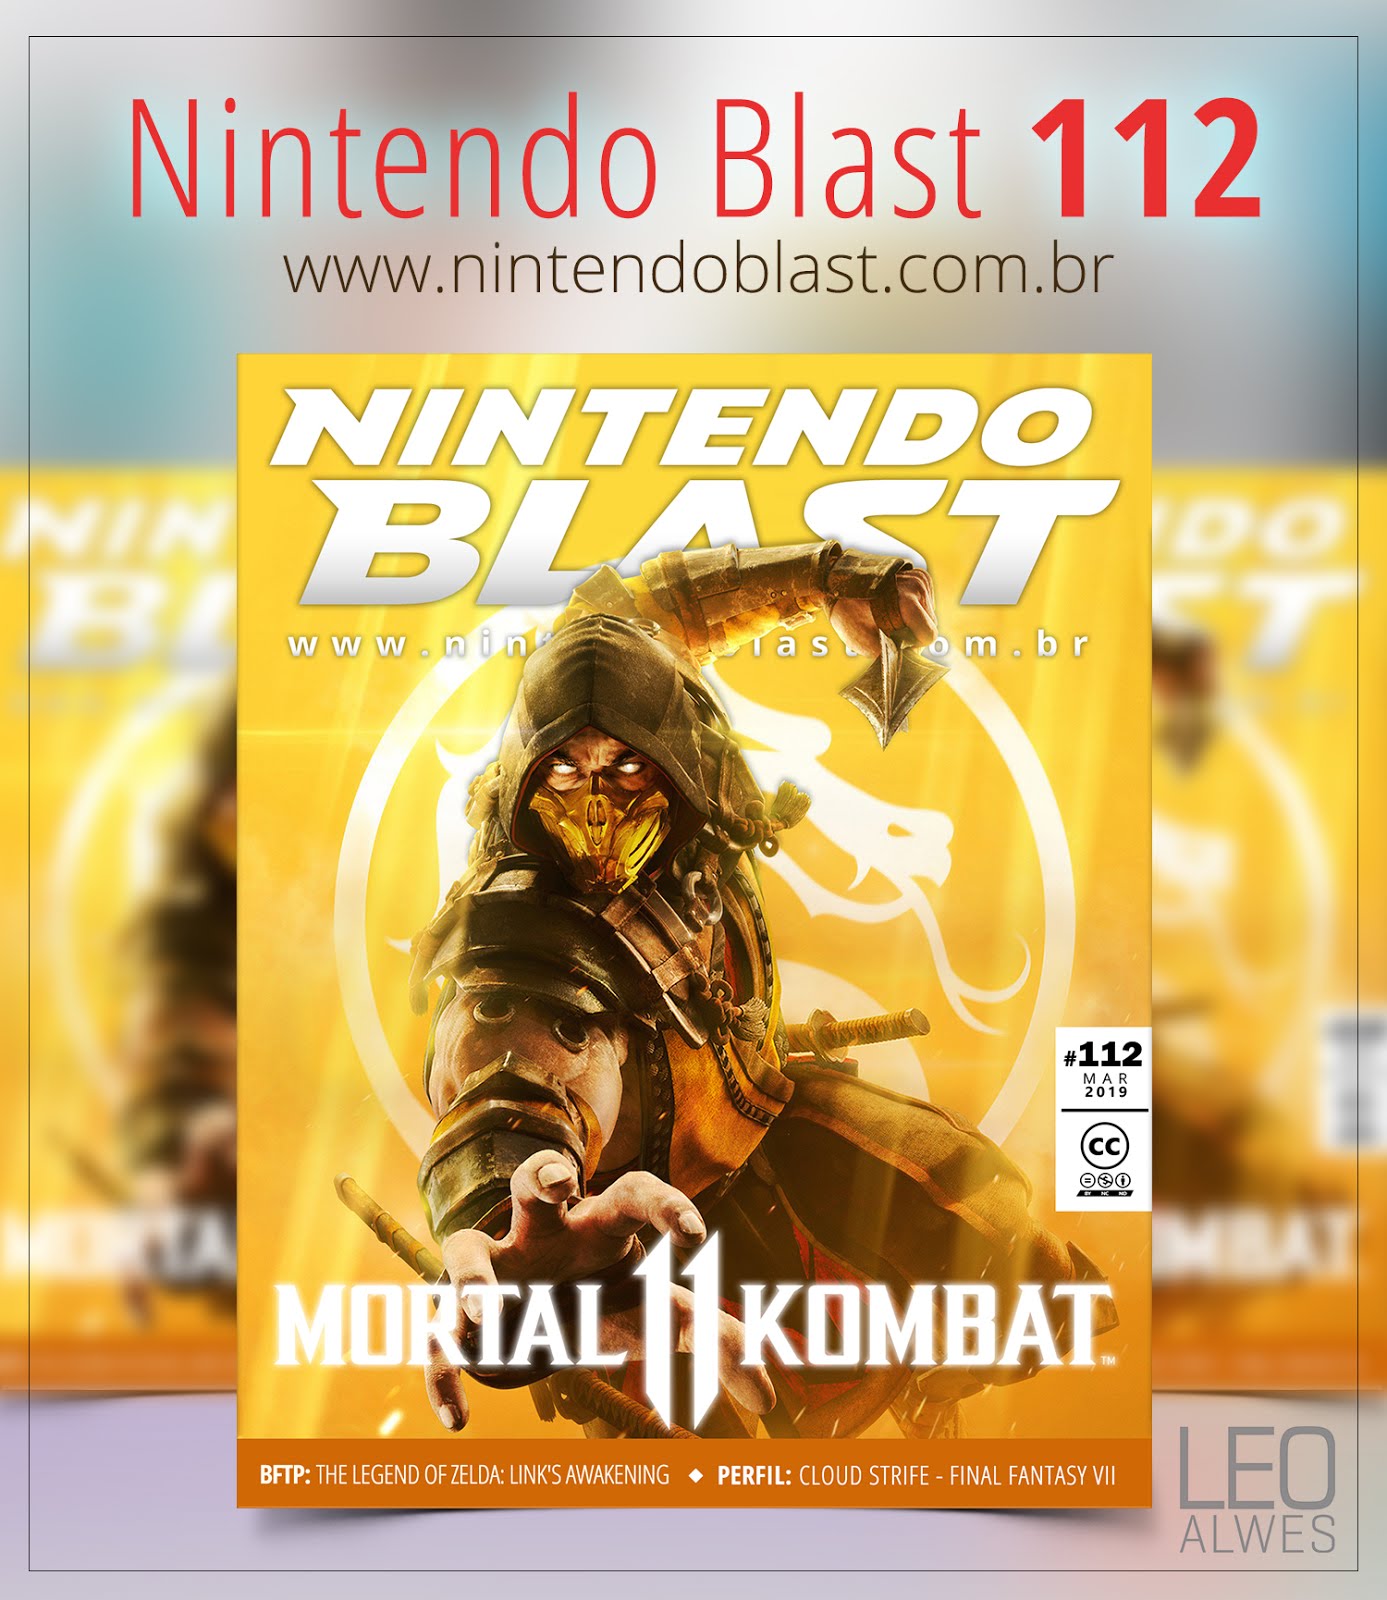 Nintendo Blast Nº32 by Nintendo Blast - Issuu